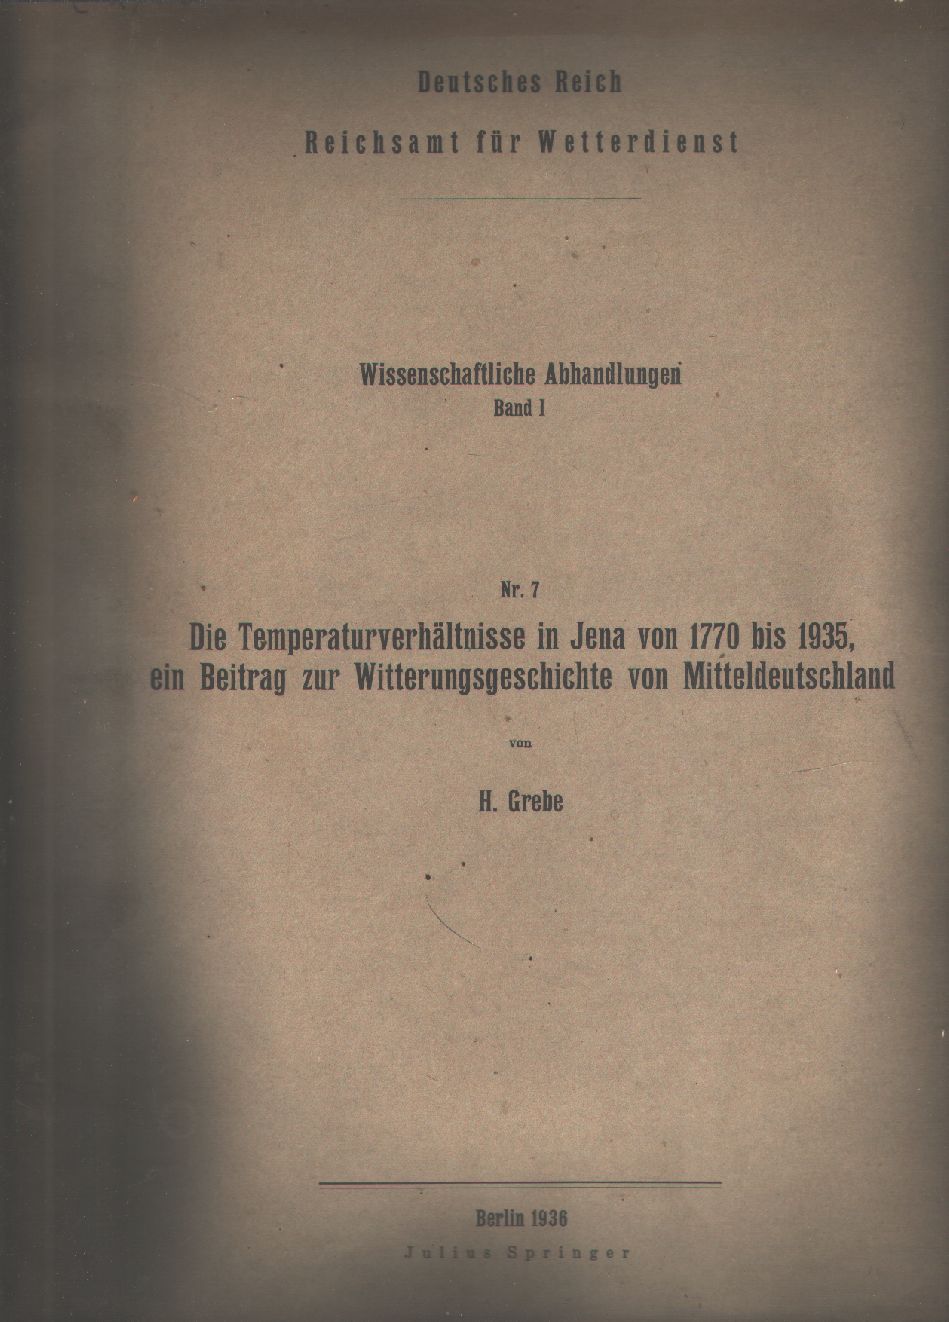 Reichsamt für Wetterdienst, Grebe  Die Temperaturverhältnisse in Jena von 1770 bis 1935, ein Beitrag zur Witterungsgeschichte von Mitteldeutschland 